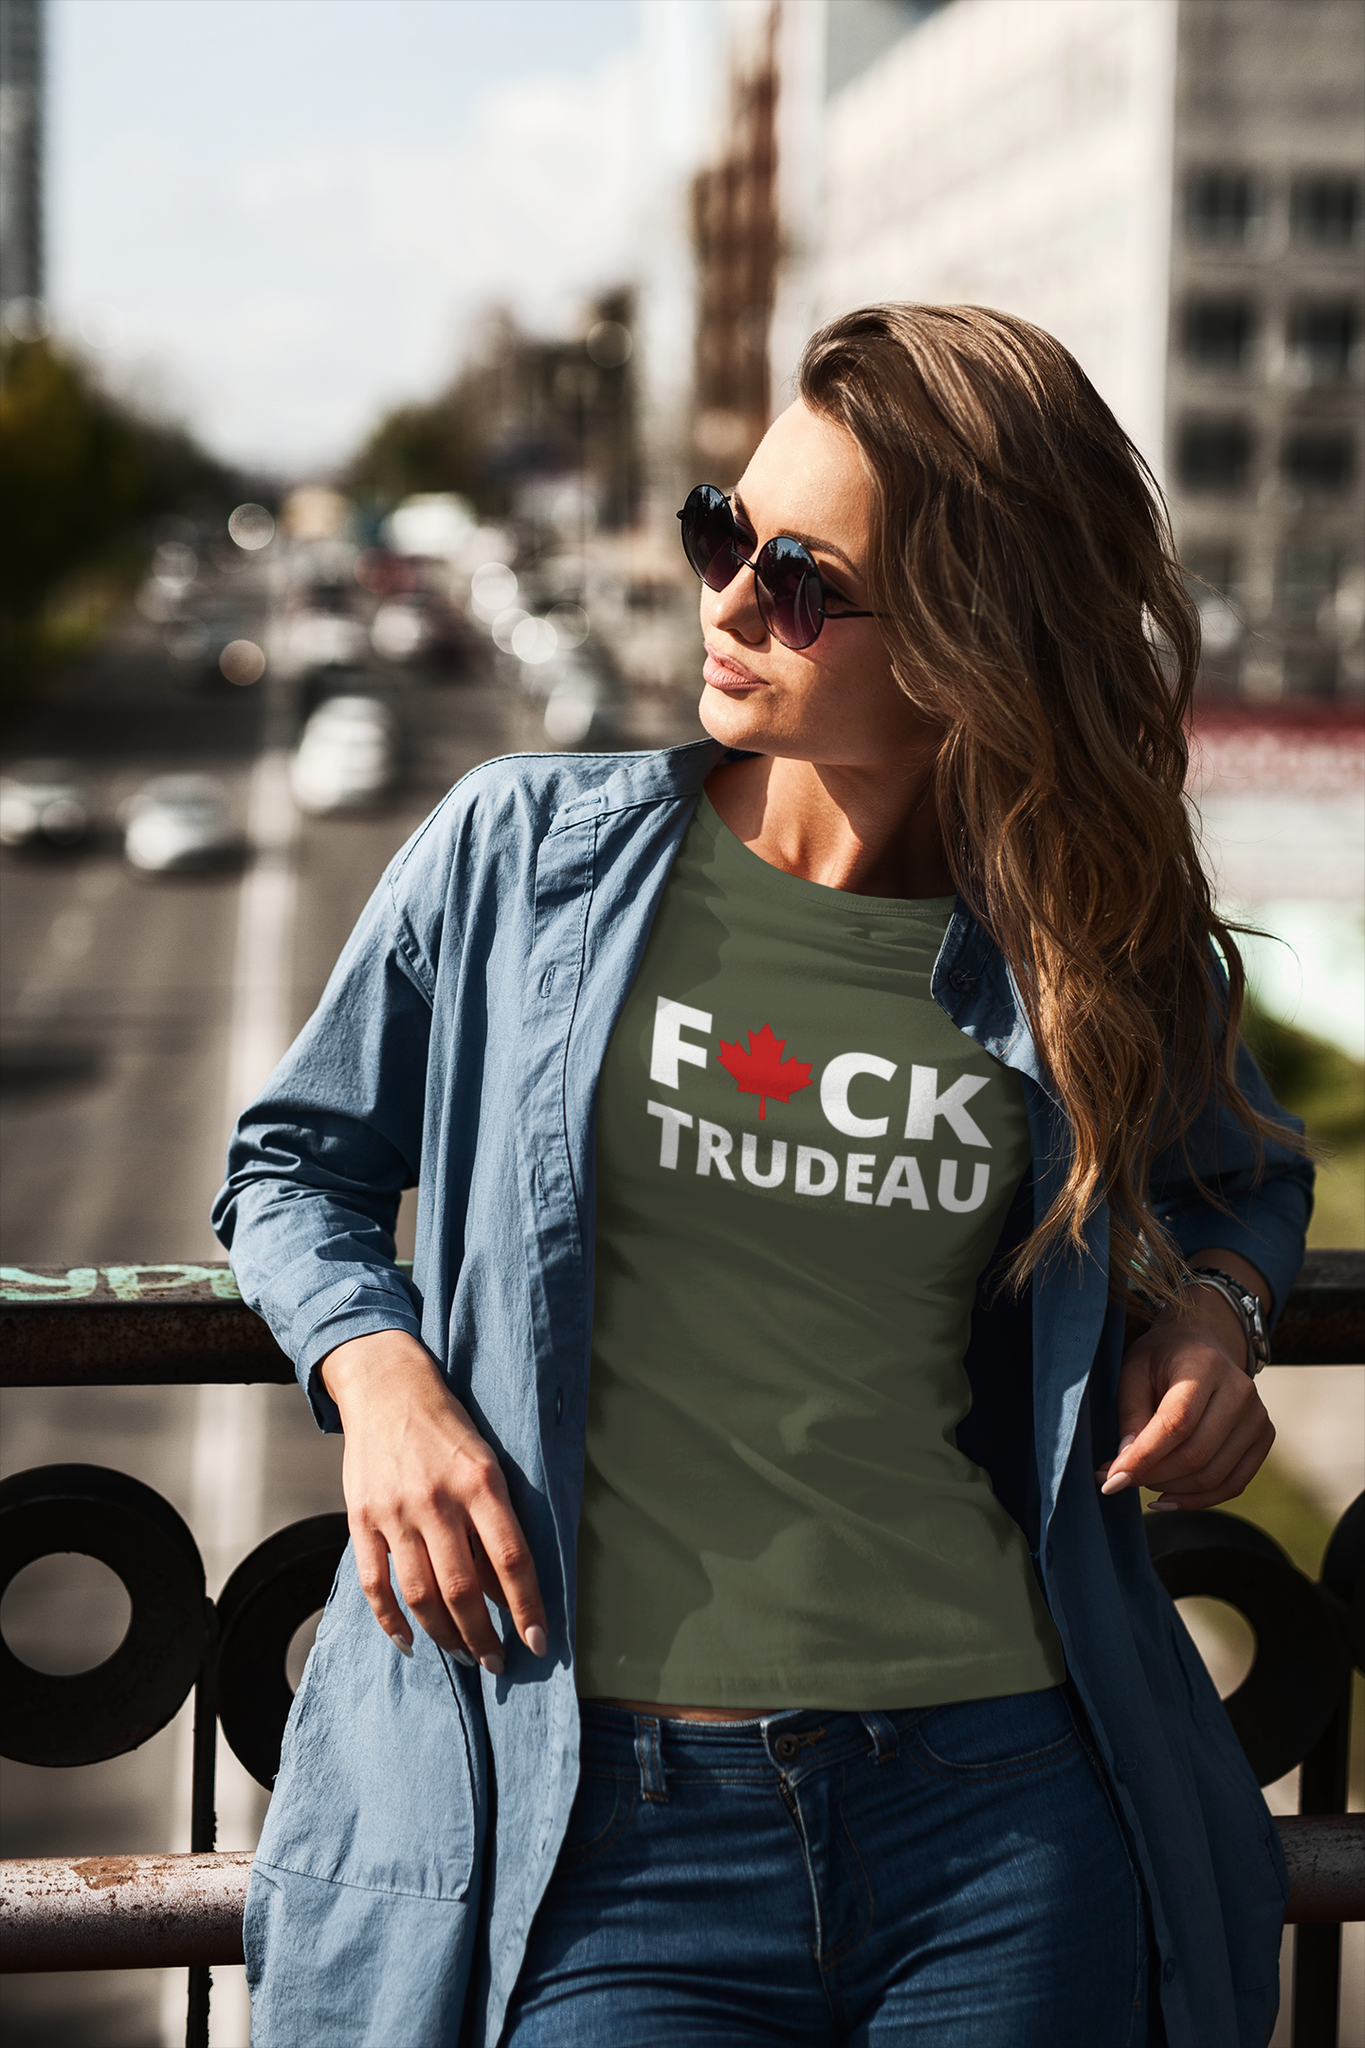 Fuck Trudeau T-Shirt Women